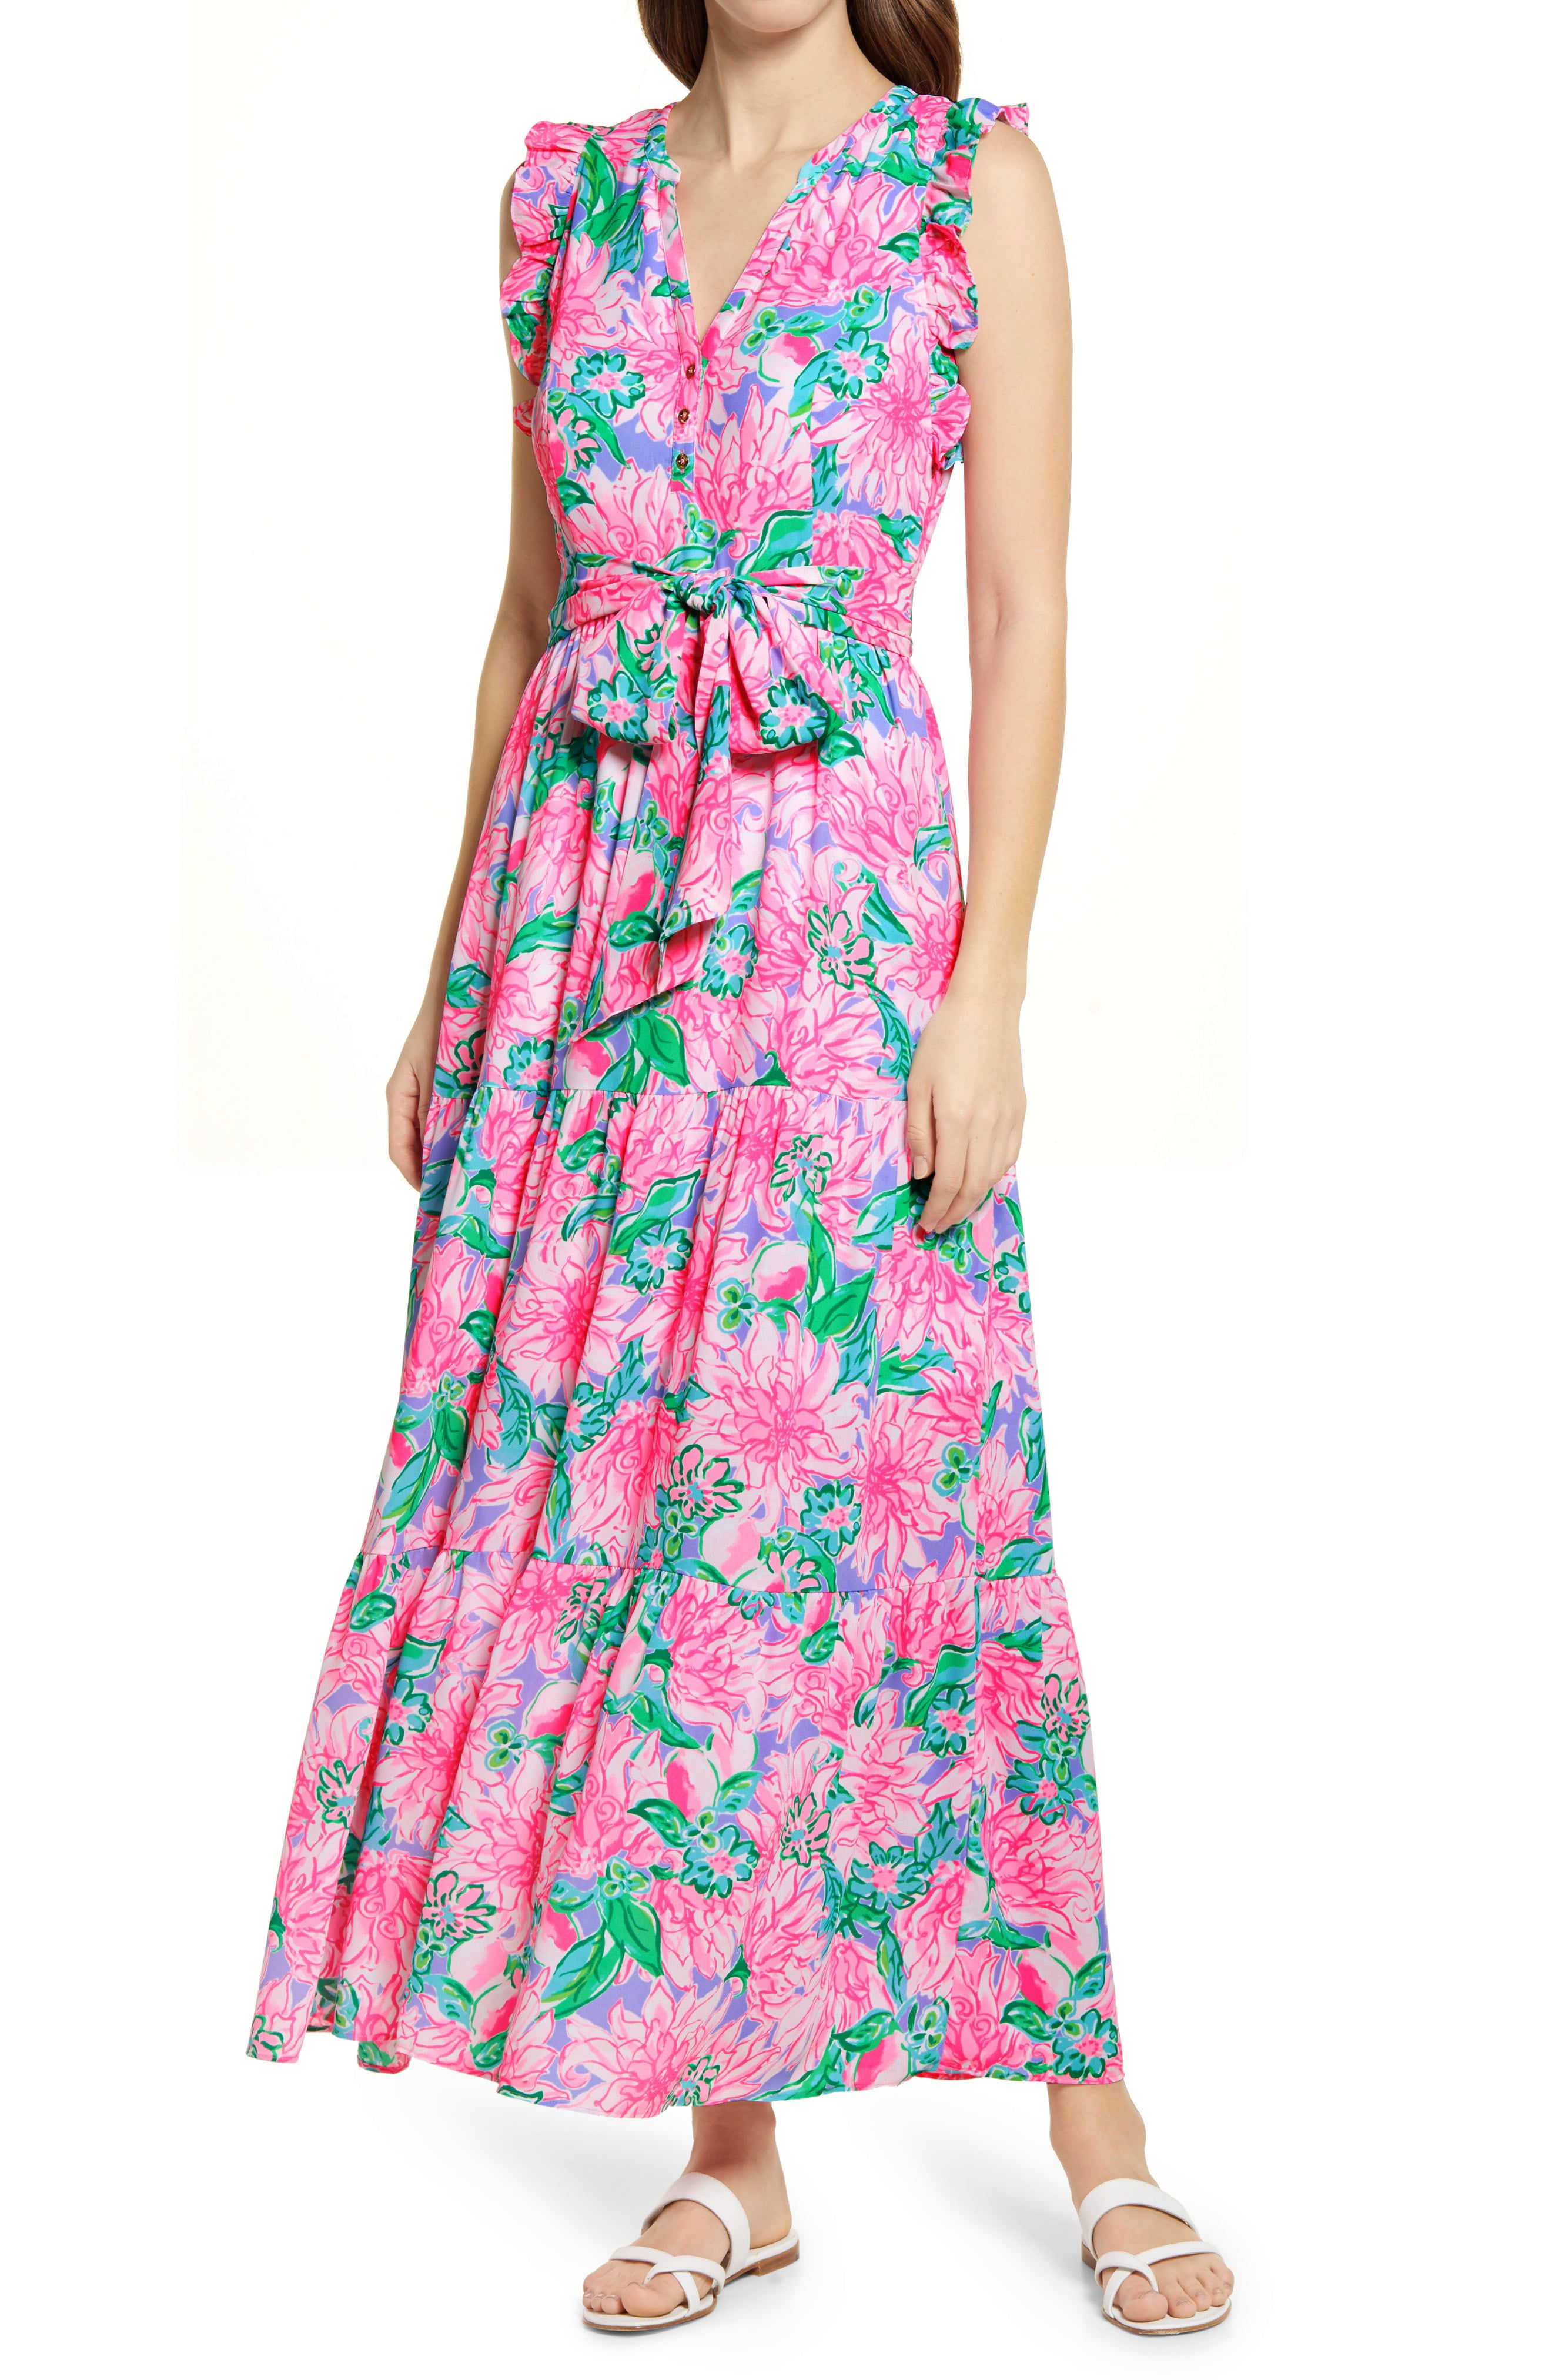 Floral Dress Designs – Fashion dresses